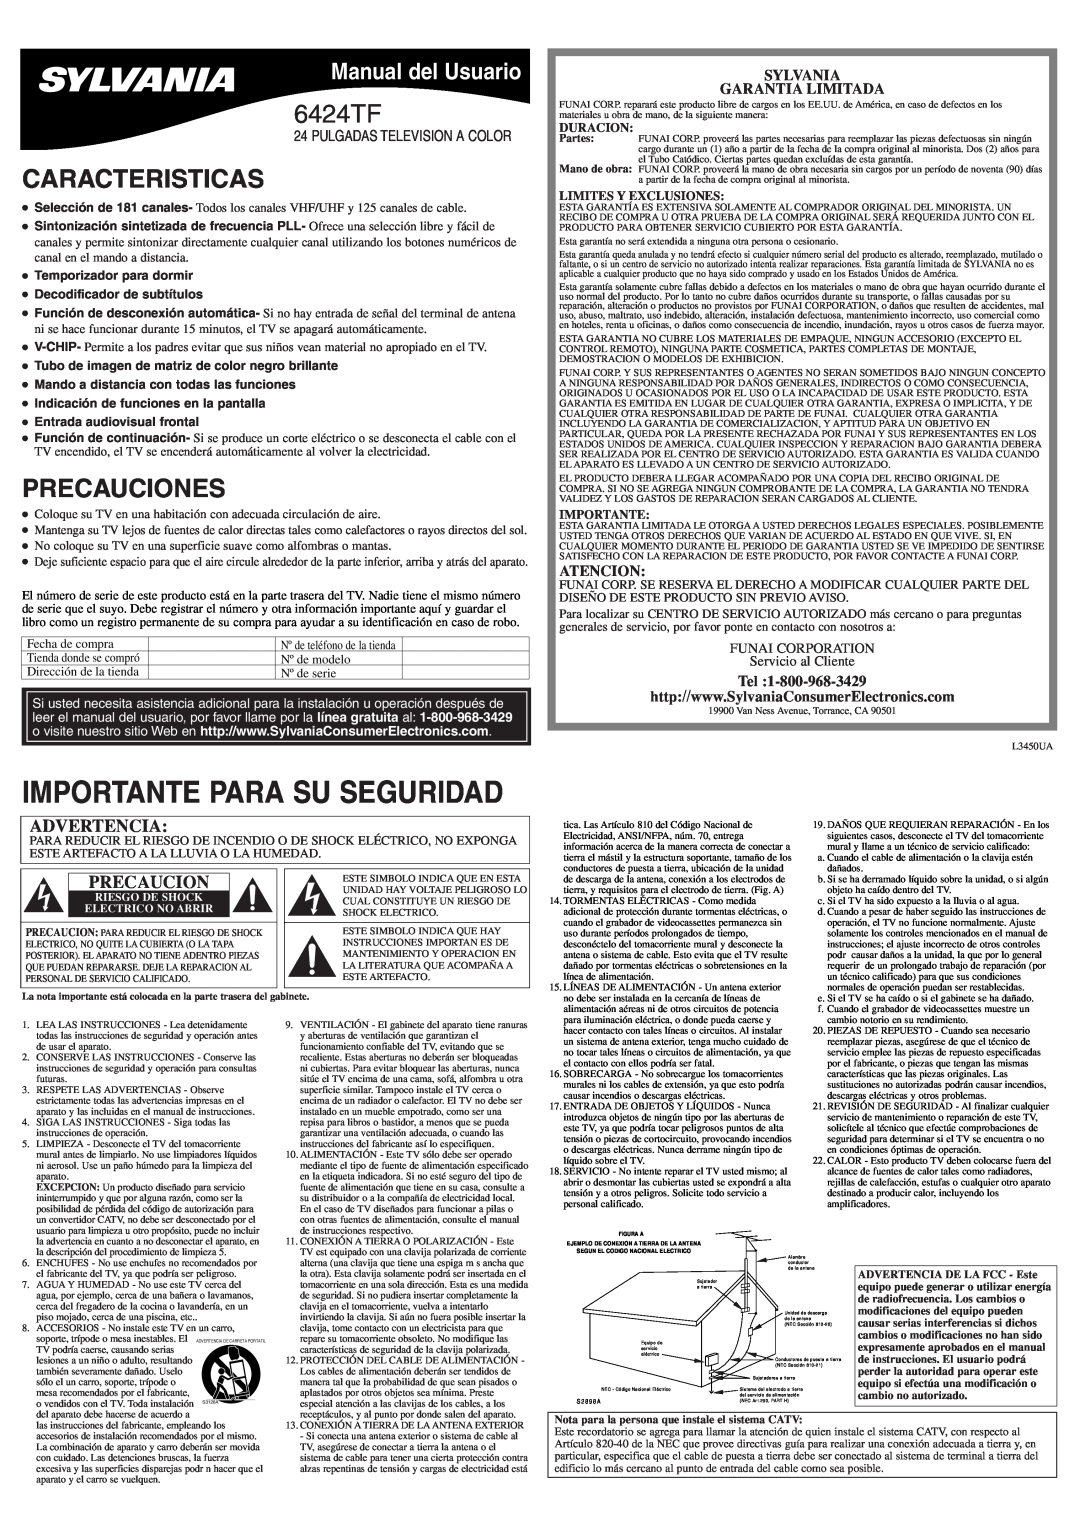 Sylvania 6424TF Caracteristicas, Precauciones, Manual del Usuario, Sylvania Garantia Limitada, Atencion, Duracion 